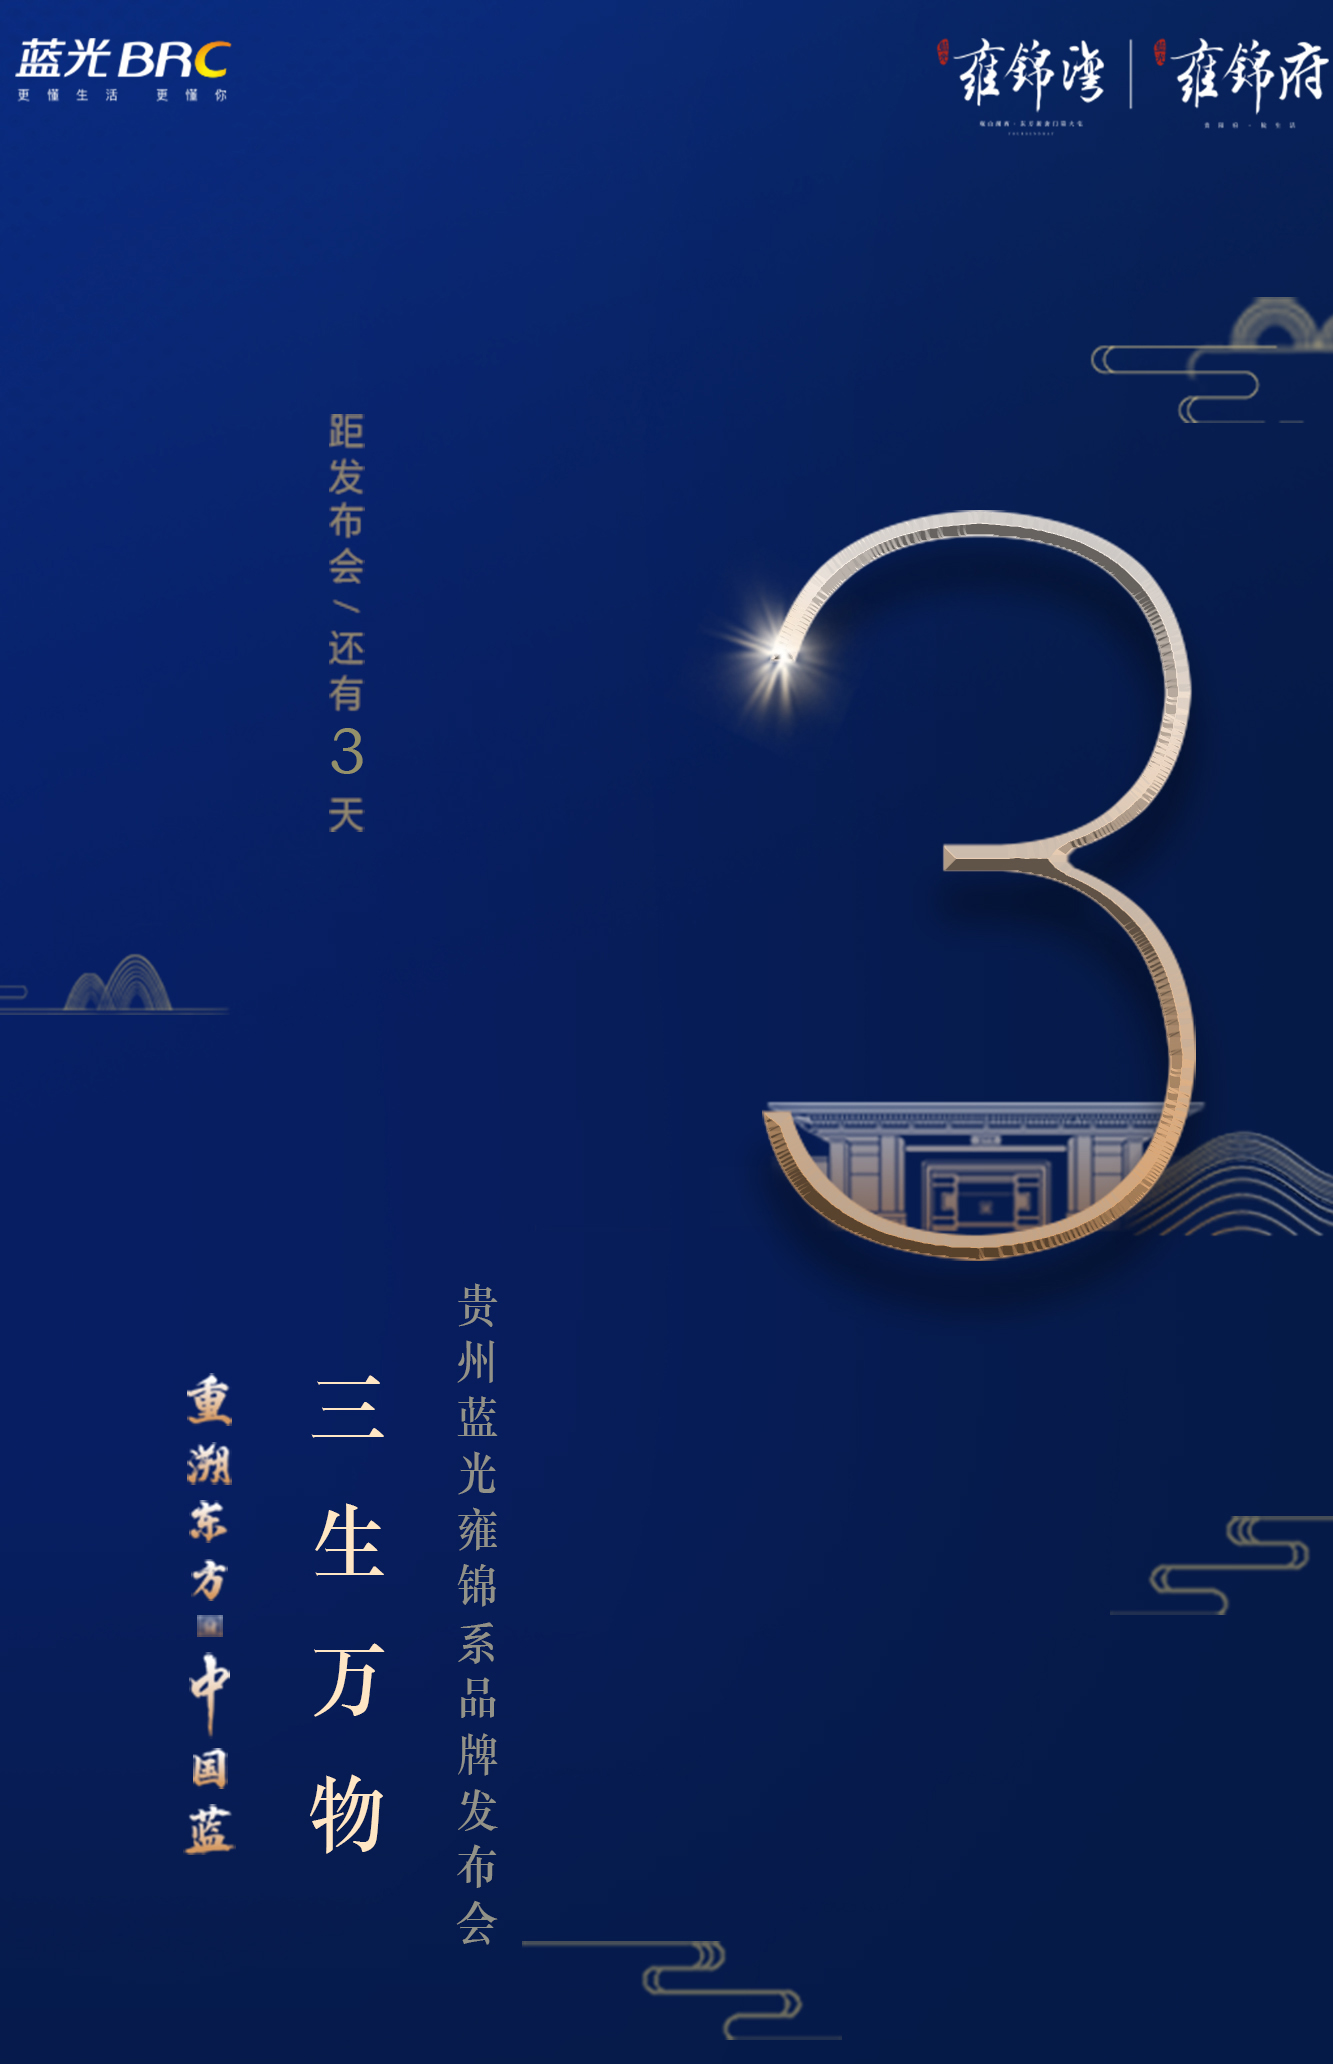 雍锦湾项目暨蓝光贵州品牌发布会将在贵阳启幕-中国网地产